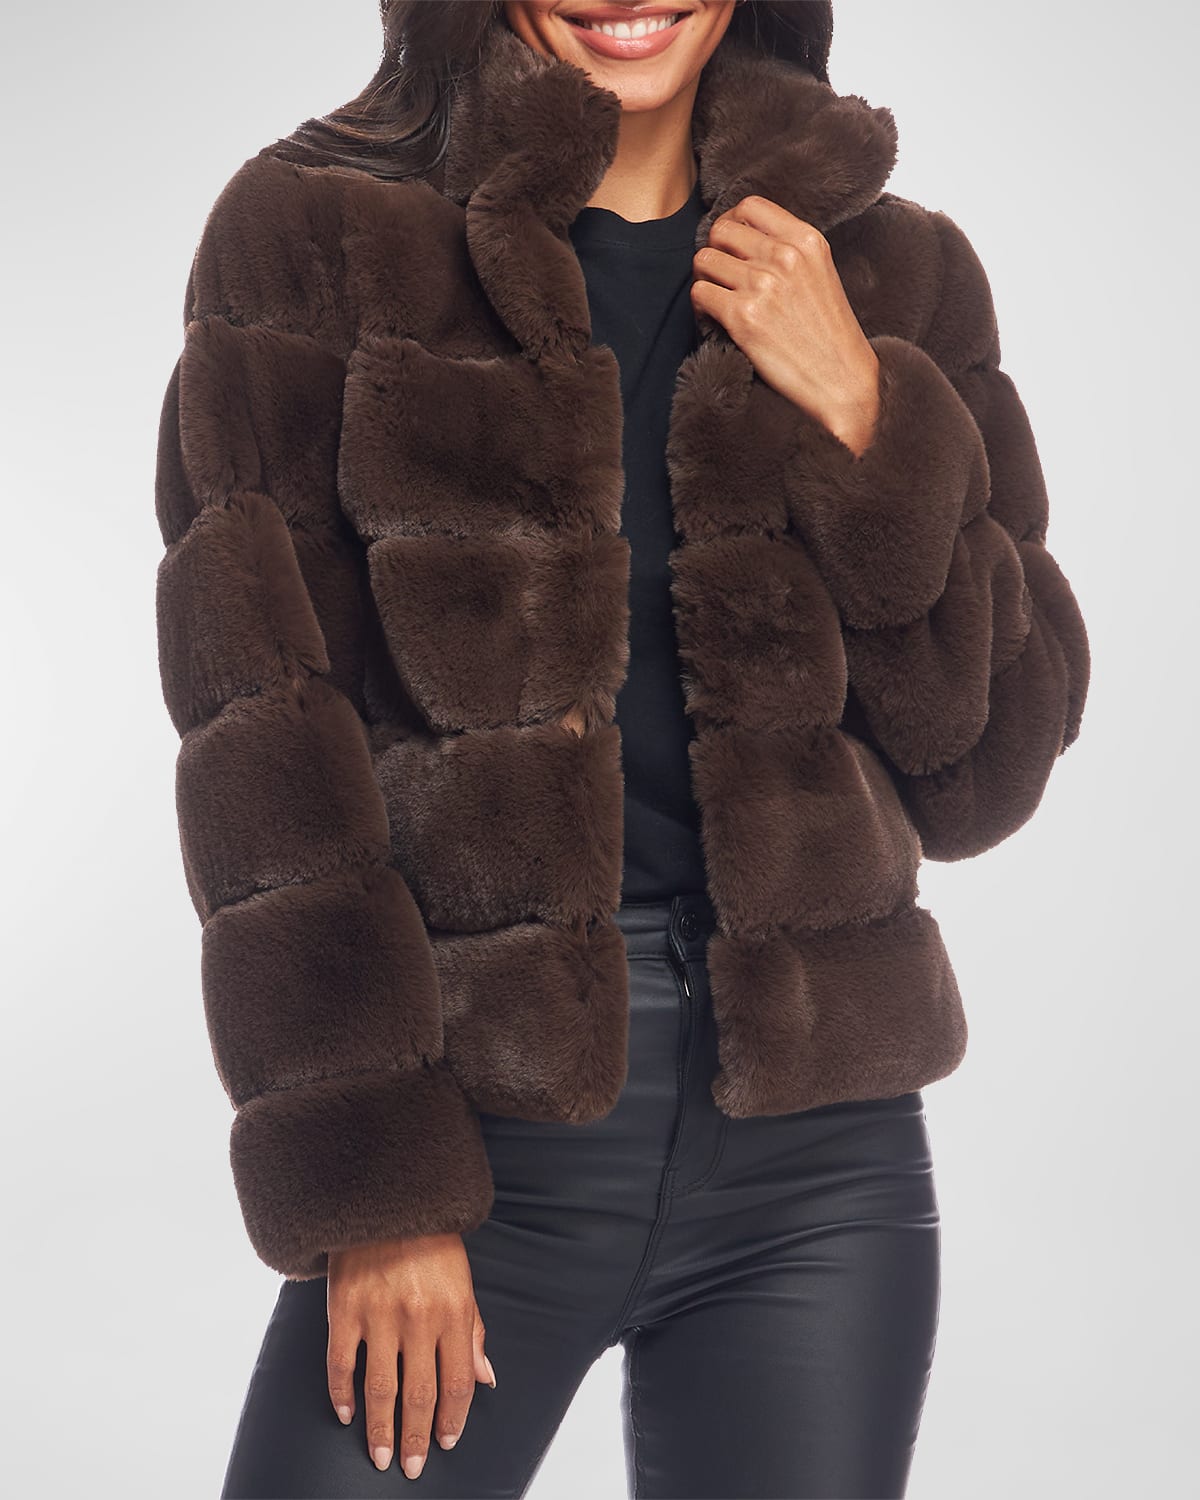 Fabulous Furs The Posh Jacket